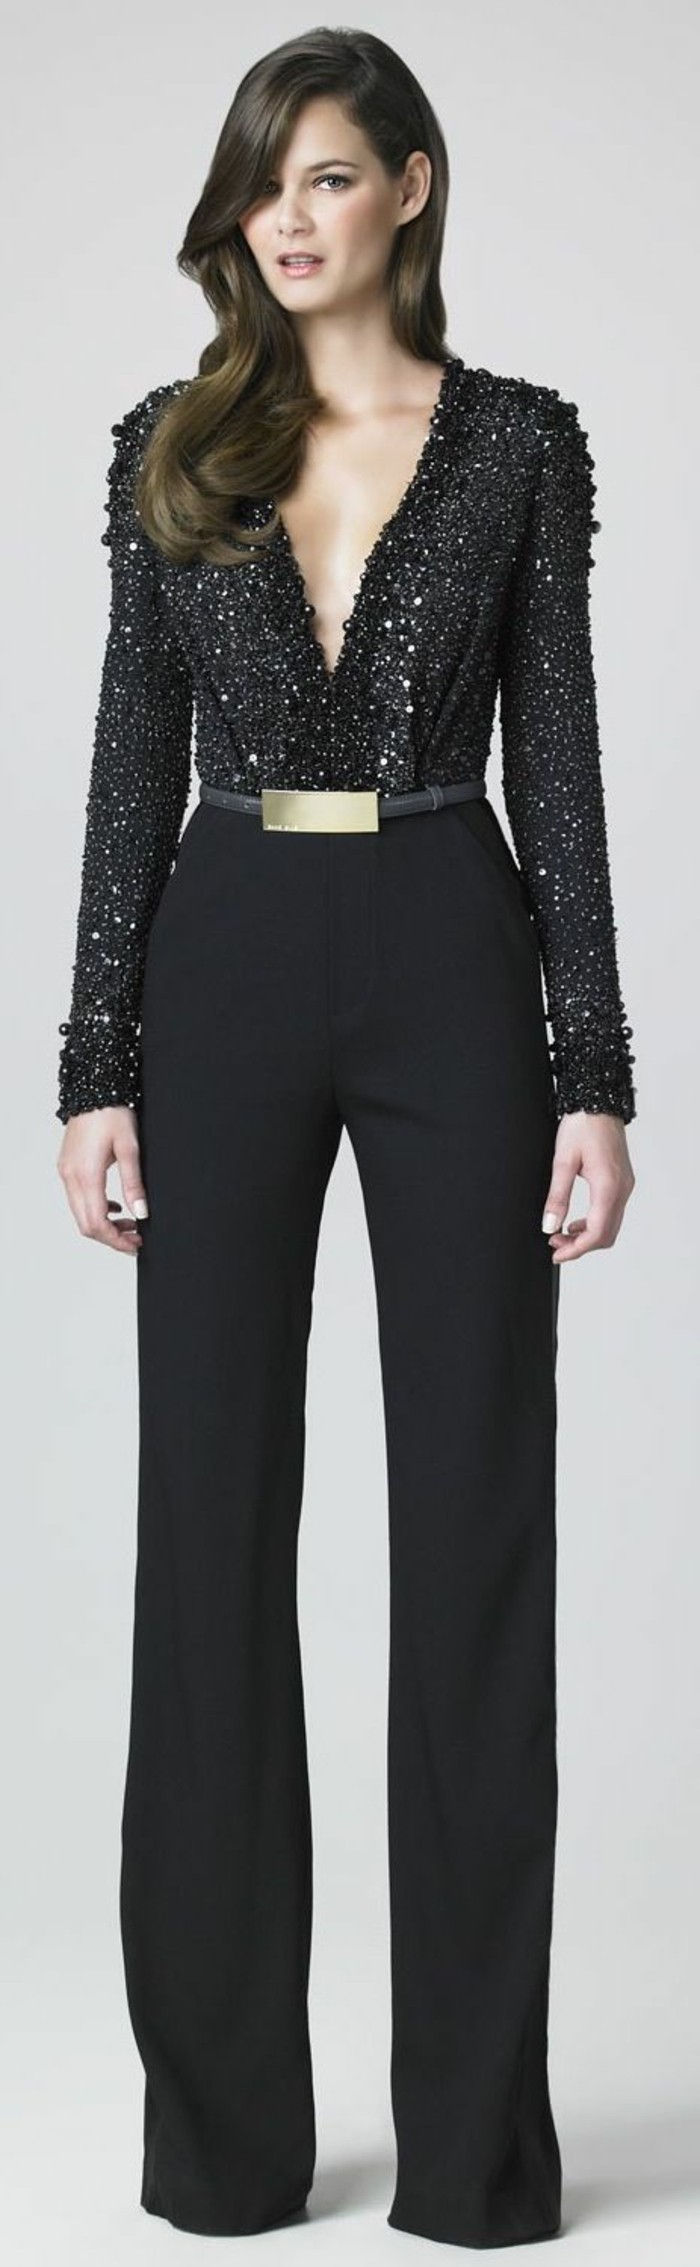 9-chic-dress-zwart-shirt broek en goud-Guertel-glitter-effect-Mitel long-hair